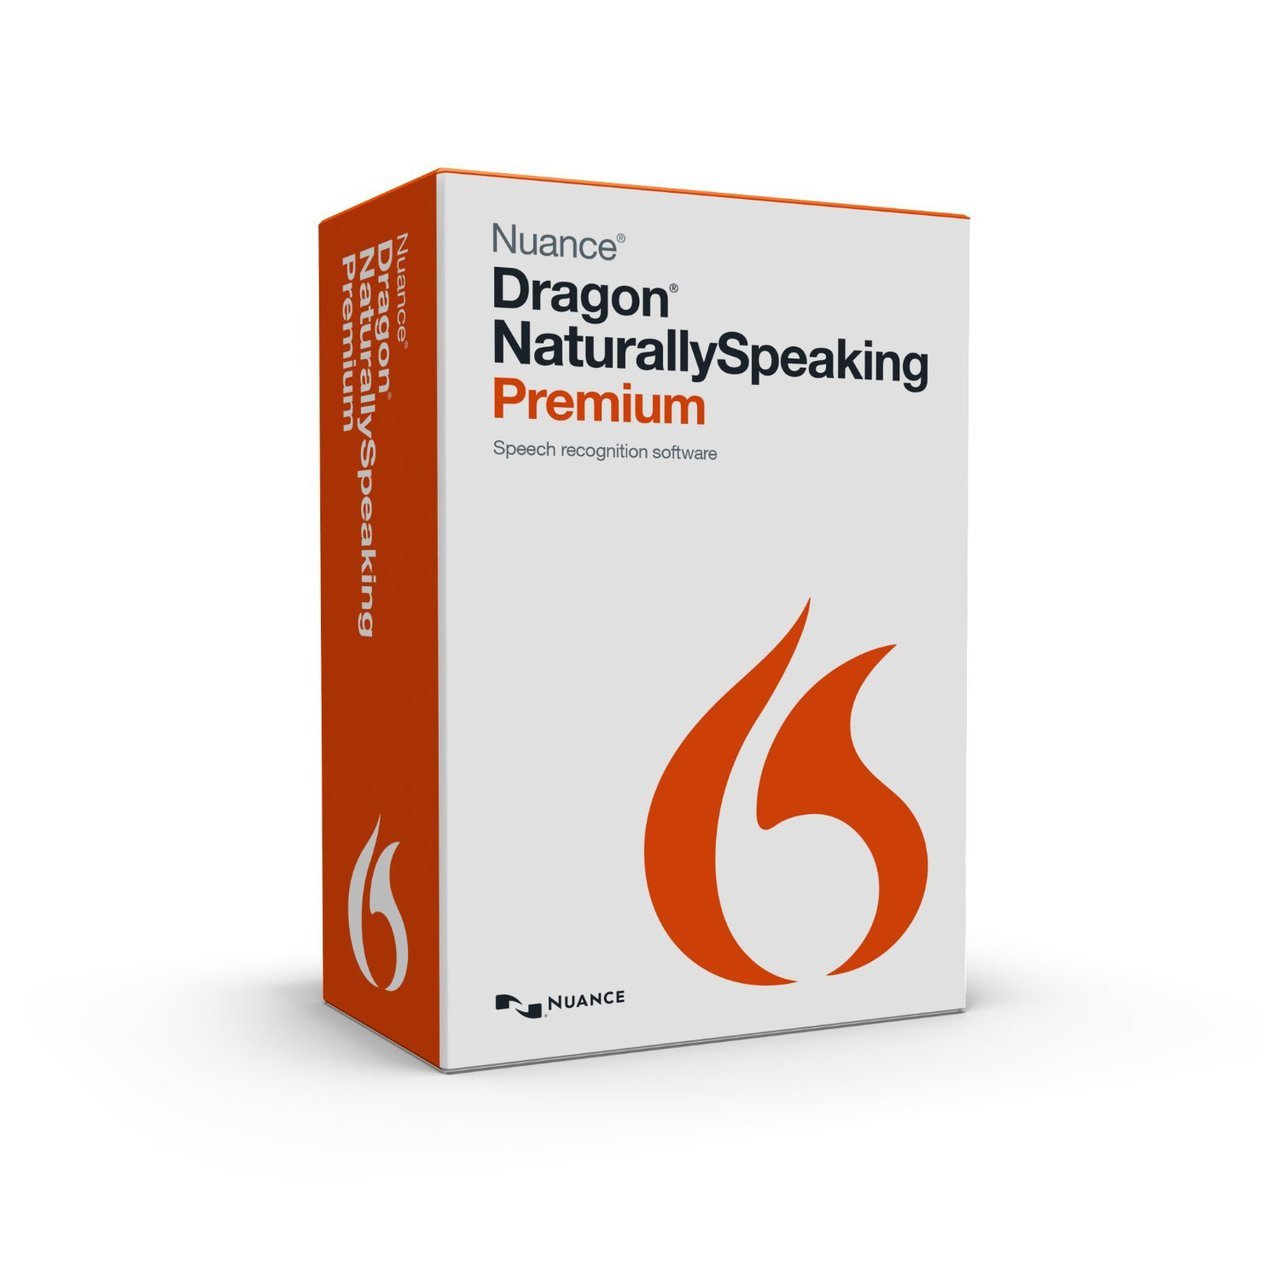 Dragon naturallyspeaking user manual